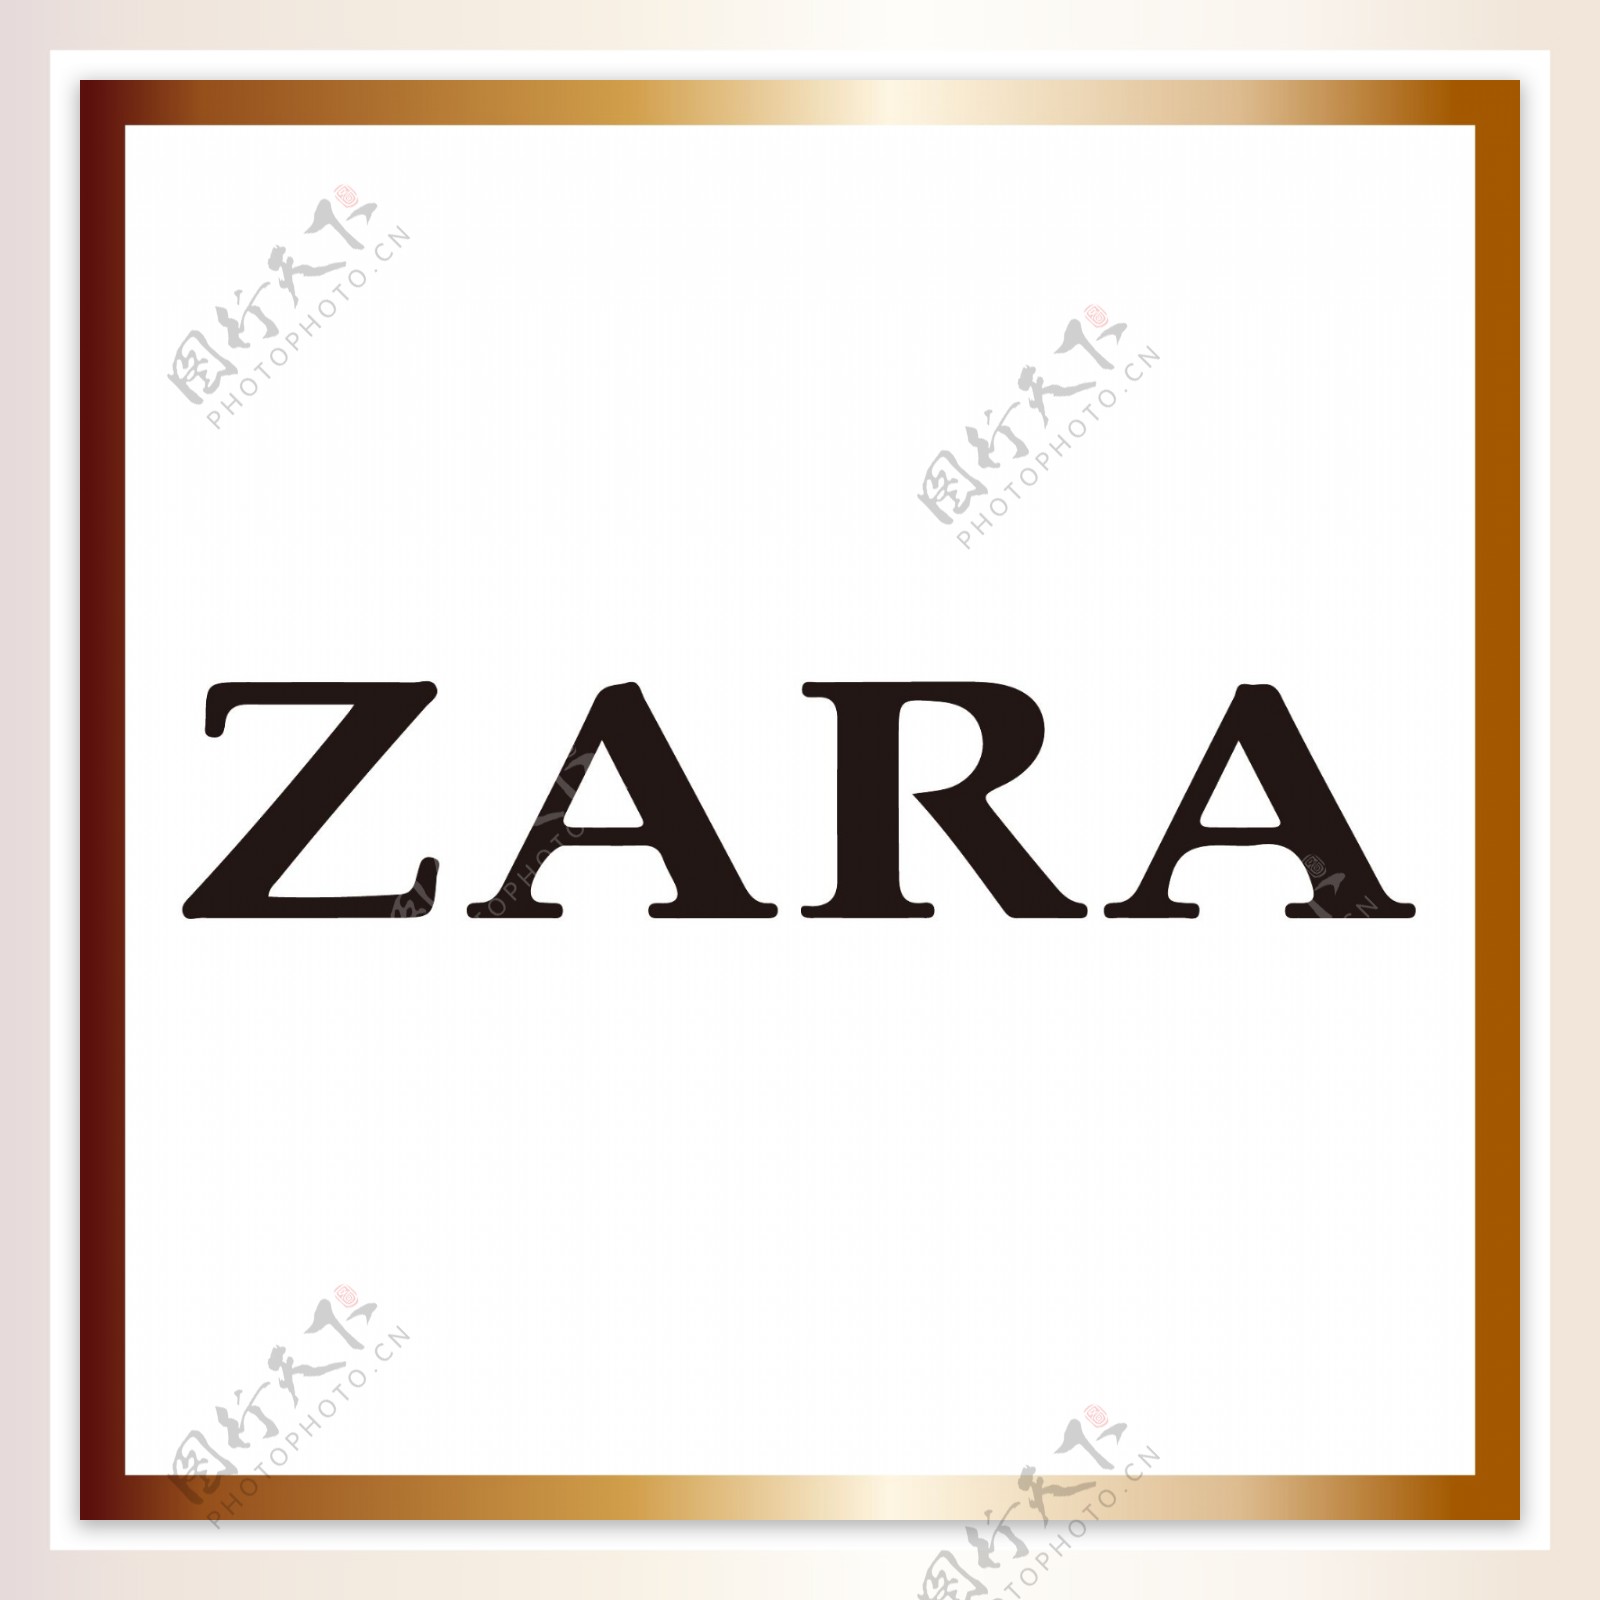 ZARA服装品牌